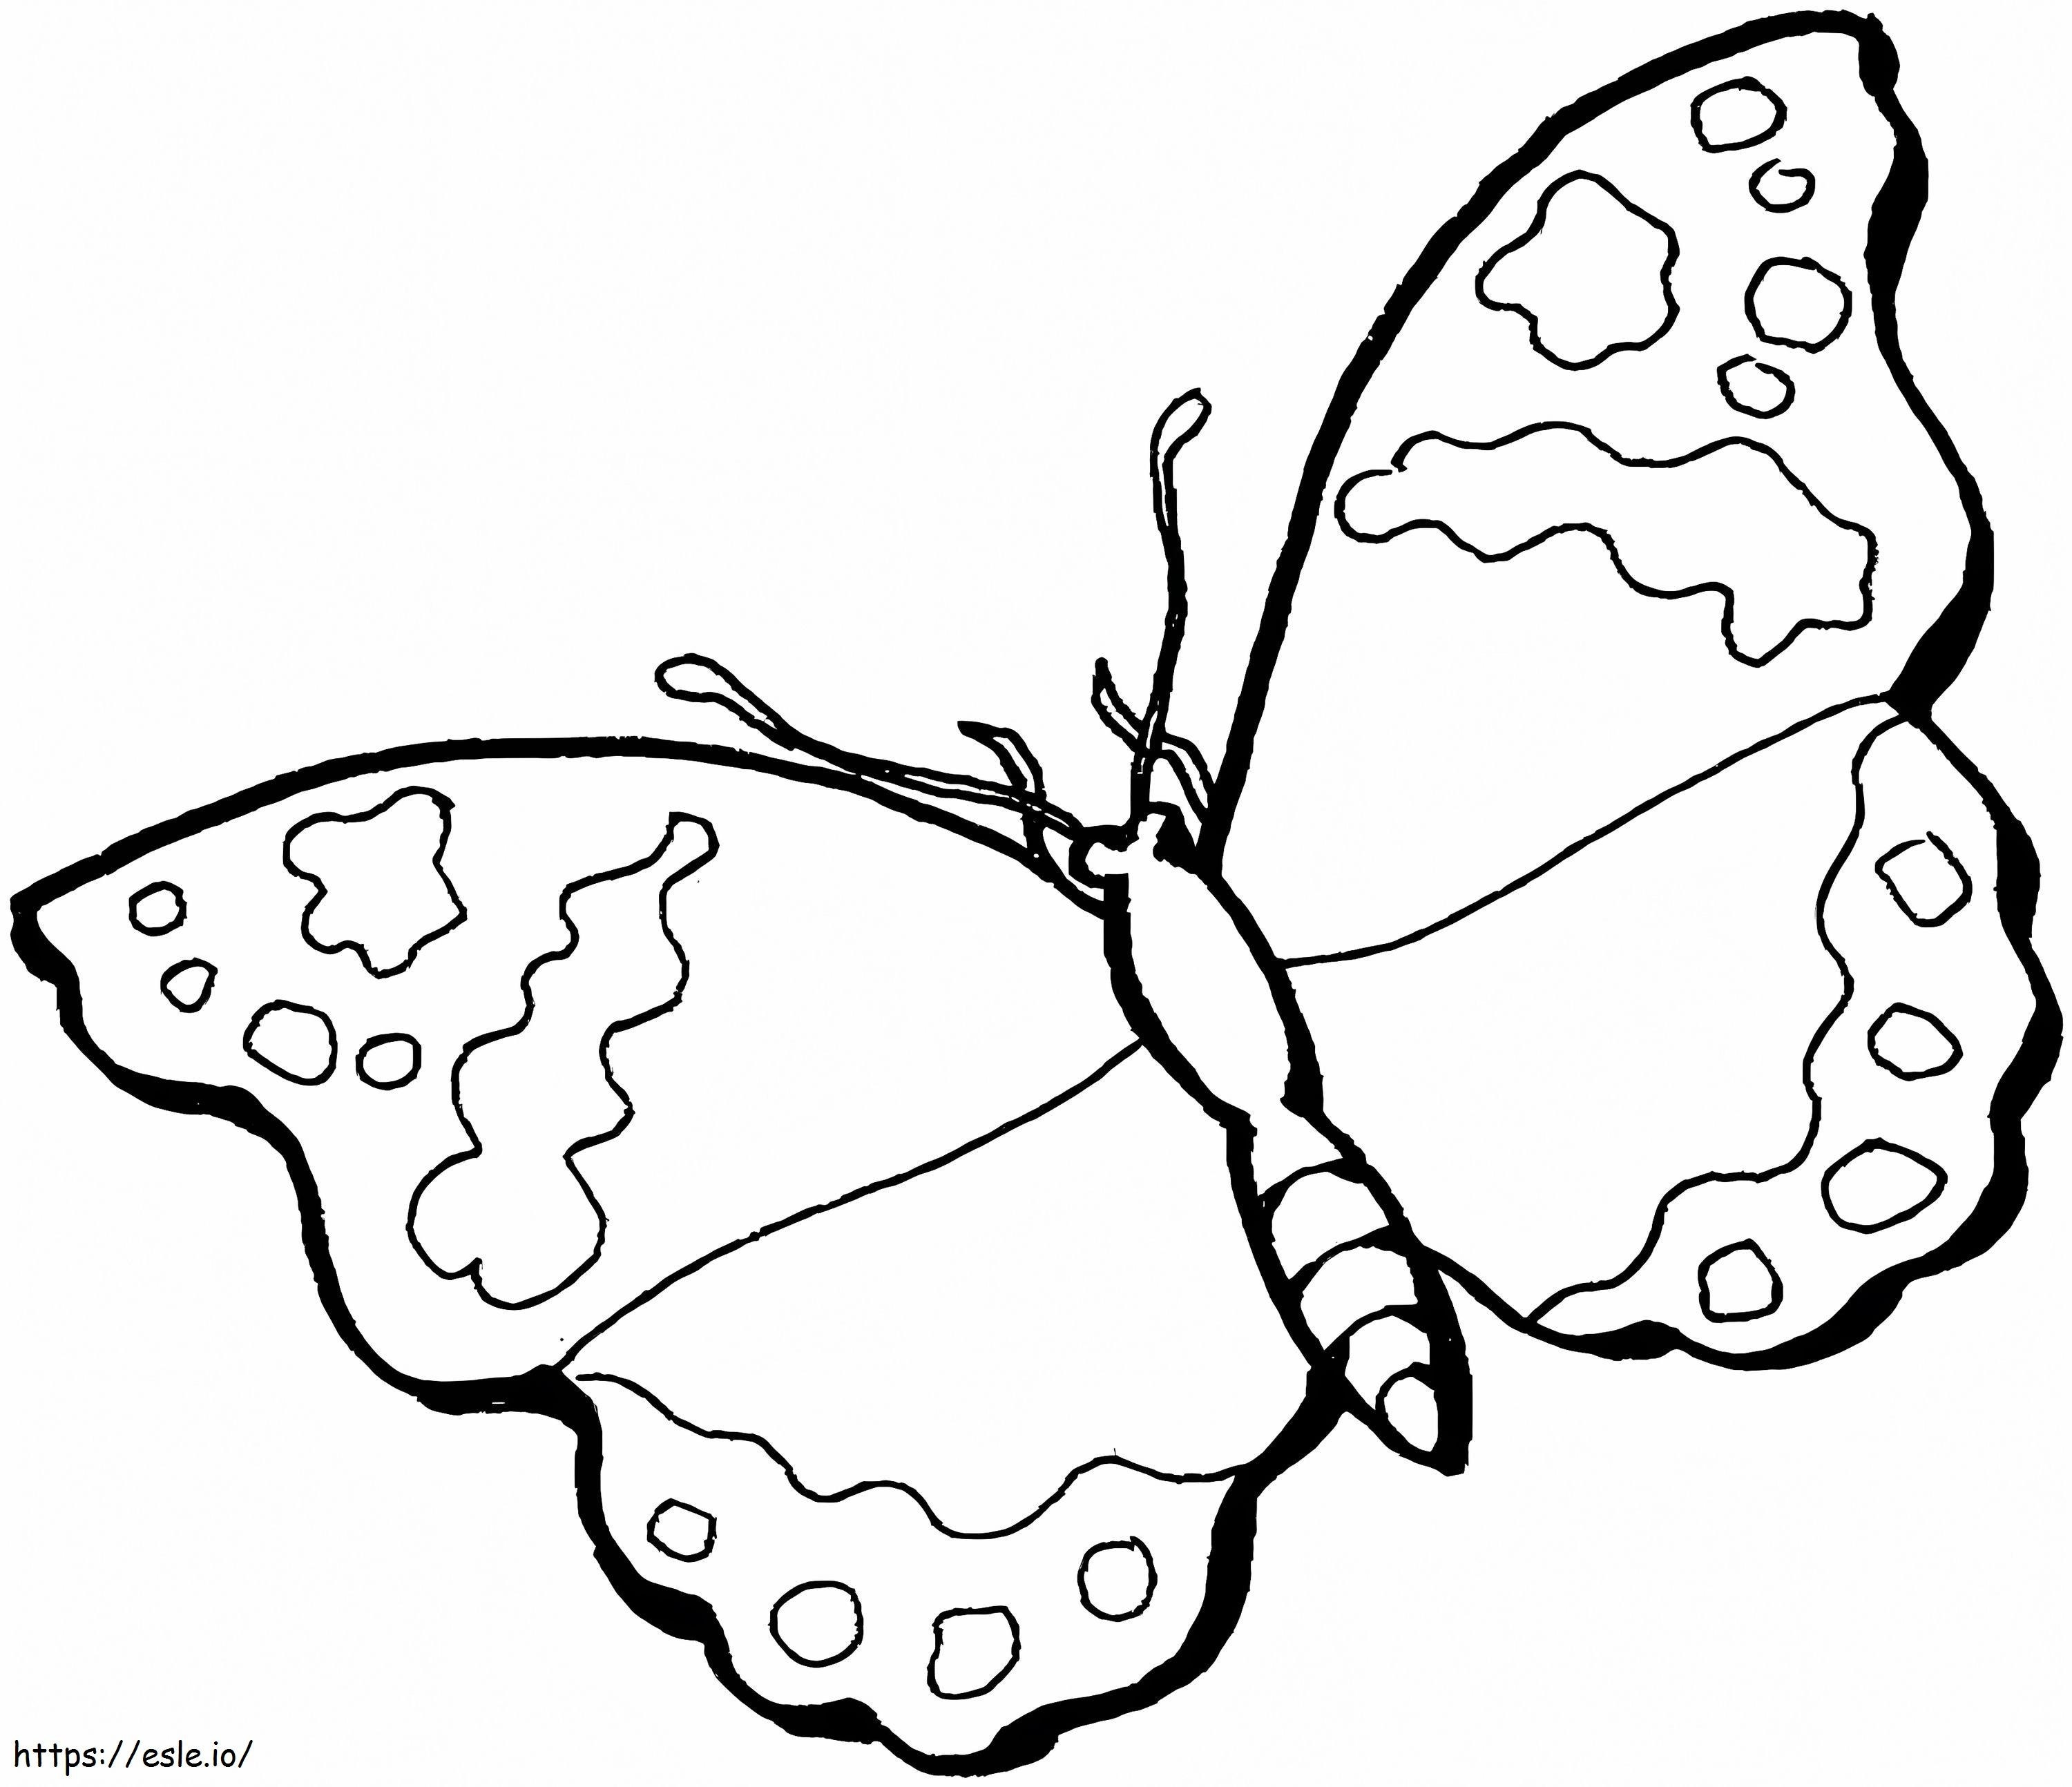 Coloriage Papillon pour les enfants à imprimer dessin